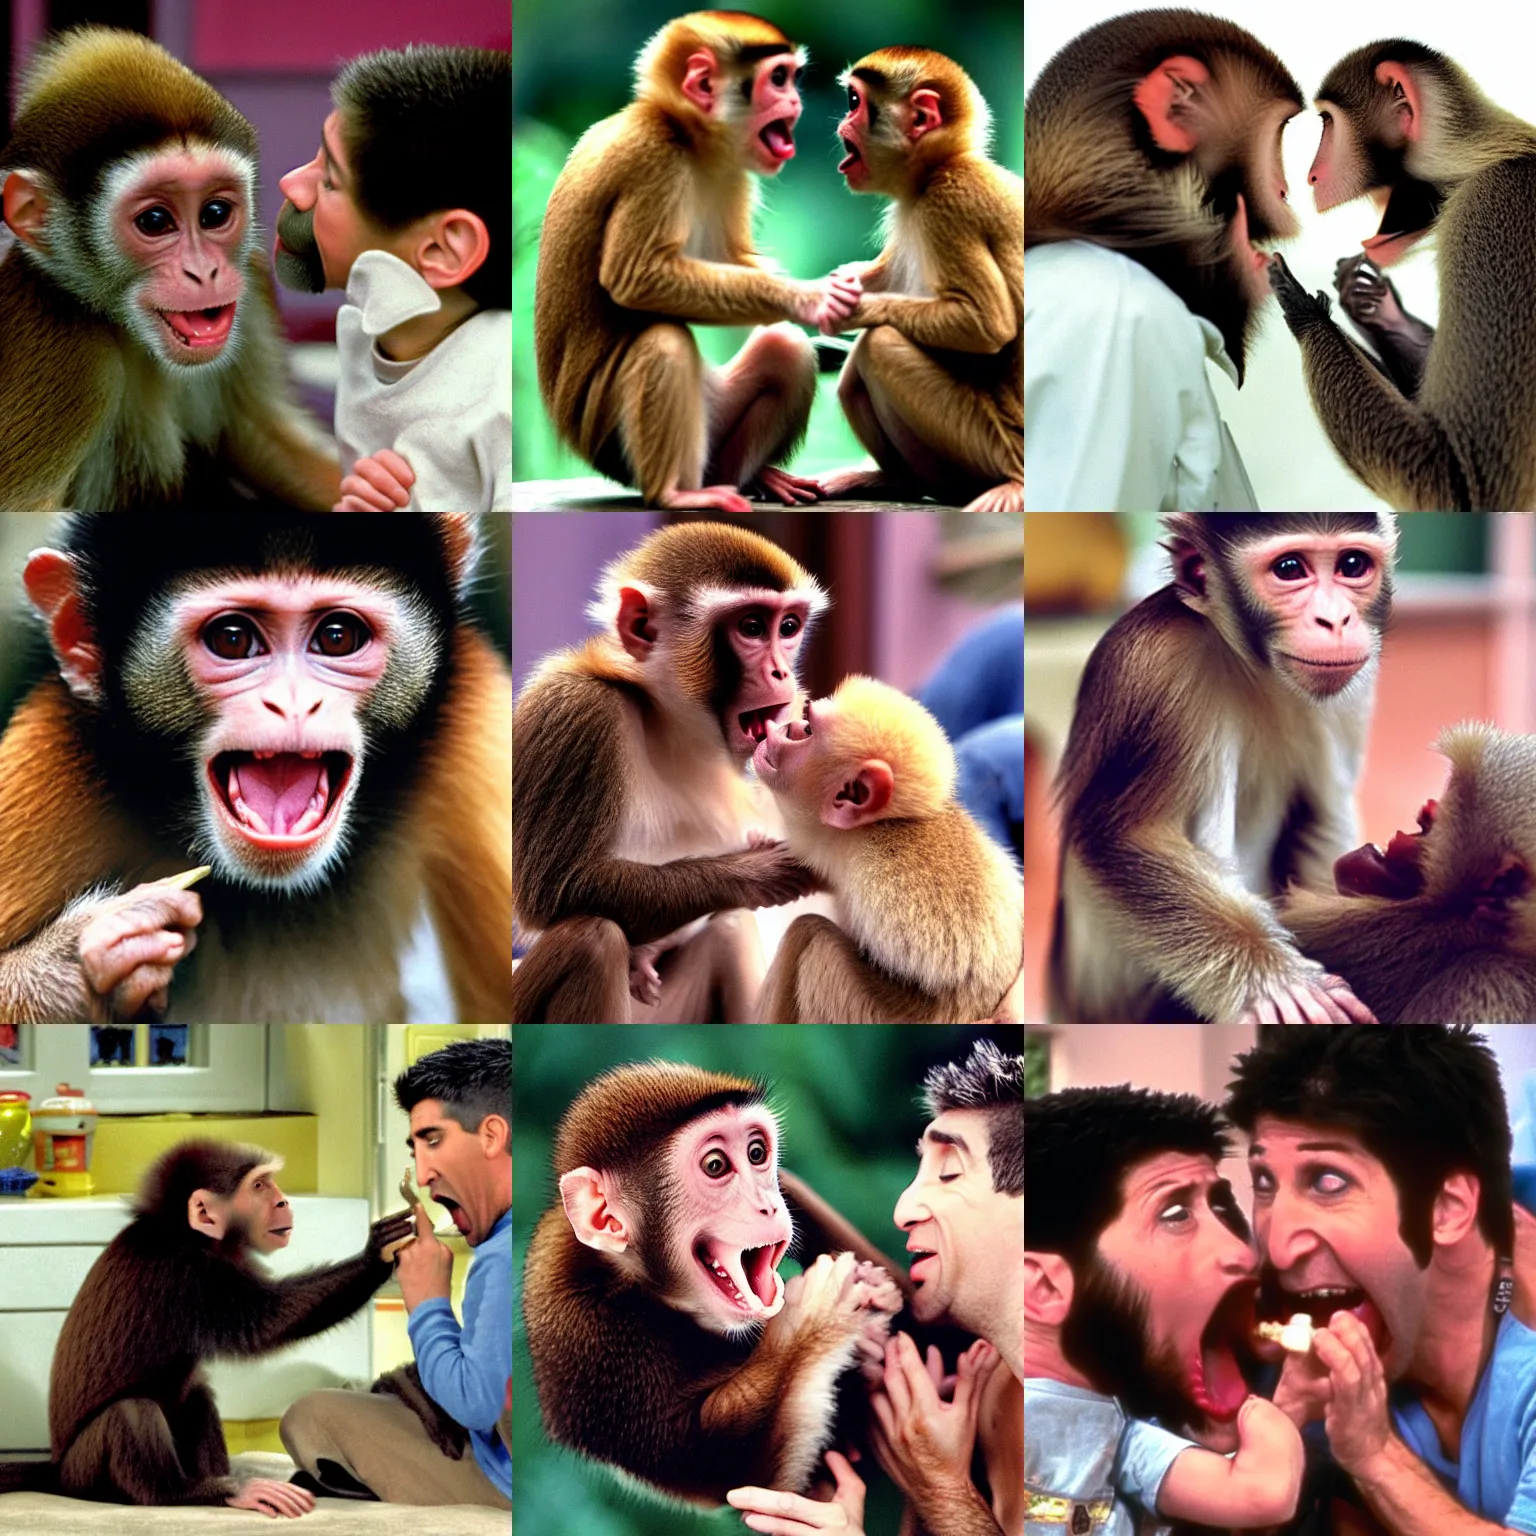 Prompt: a capuchin monkey biting ross geller, ross geller screaming, friends 9 0 s sitcom screenshot,